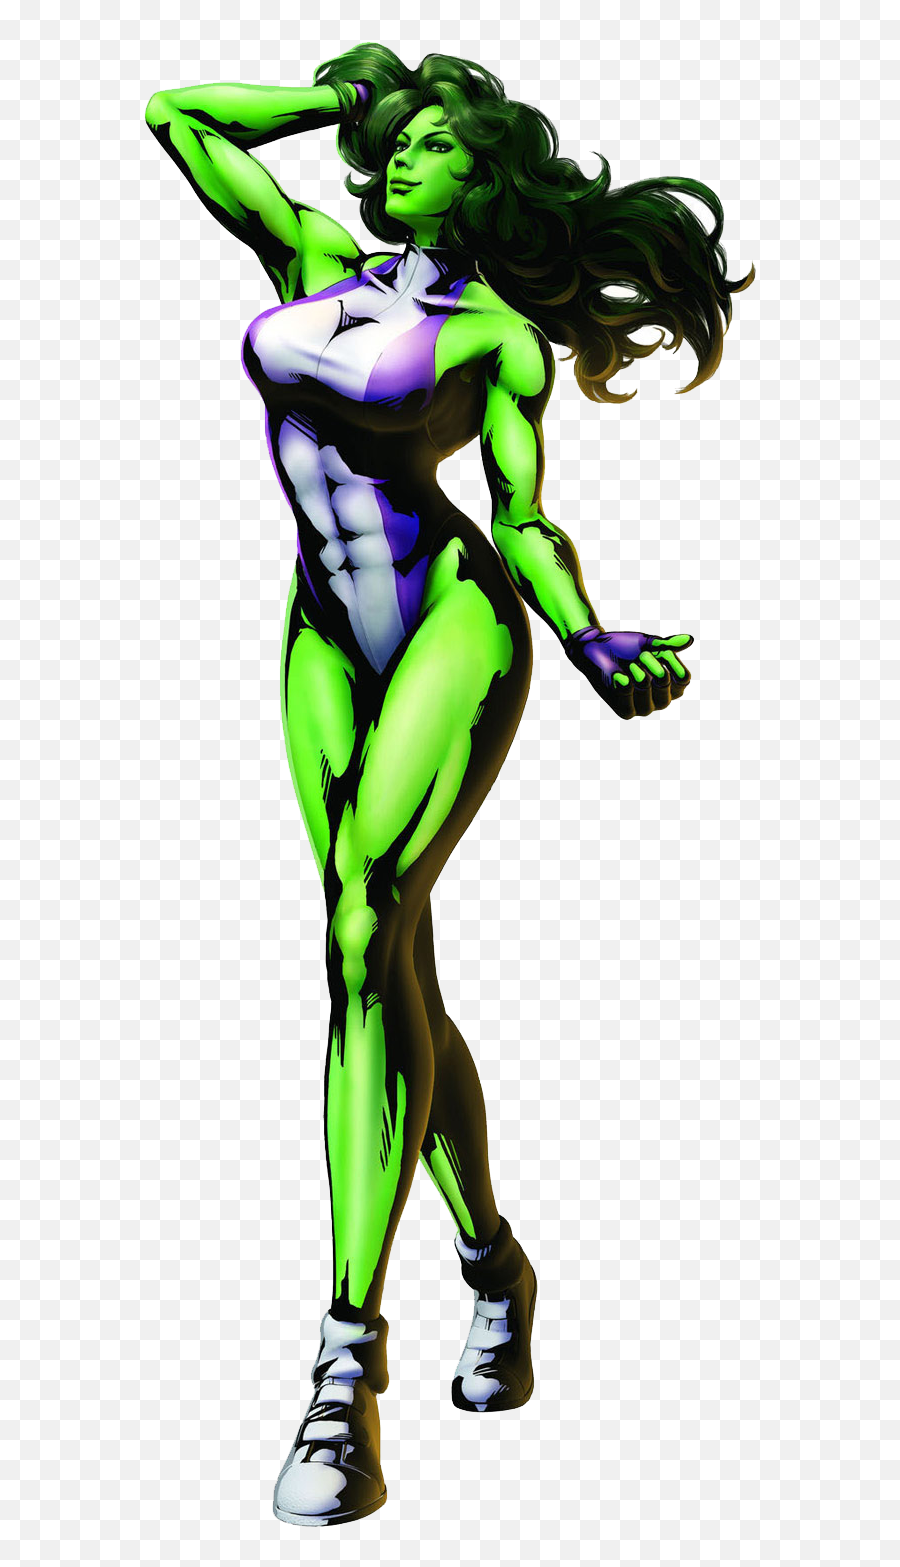 She Hulk Png Hd - Marvel Vs Capcom 3 She,She Hulk Png